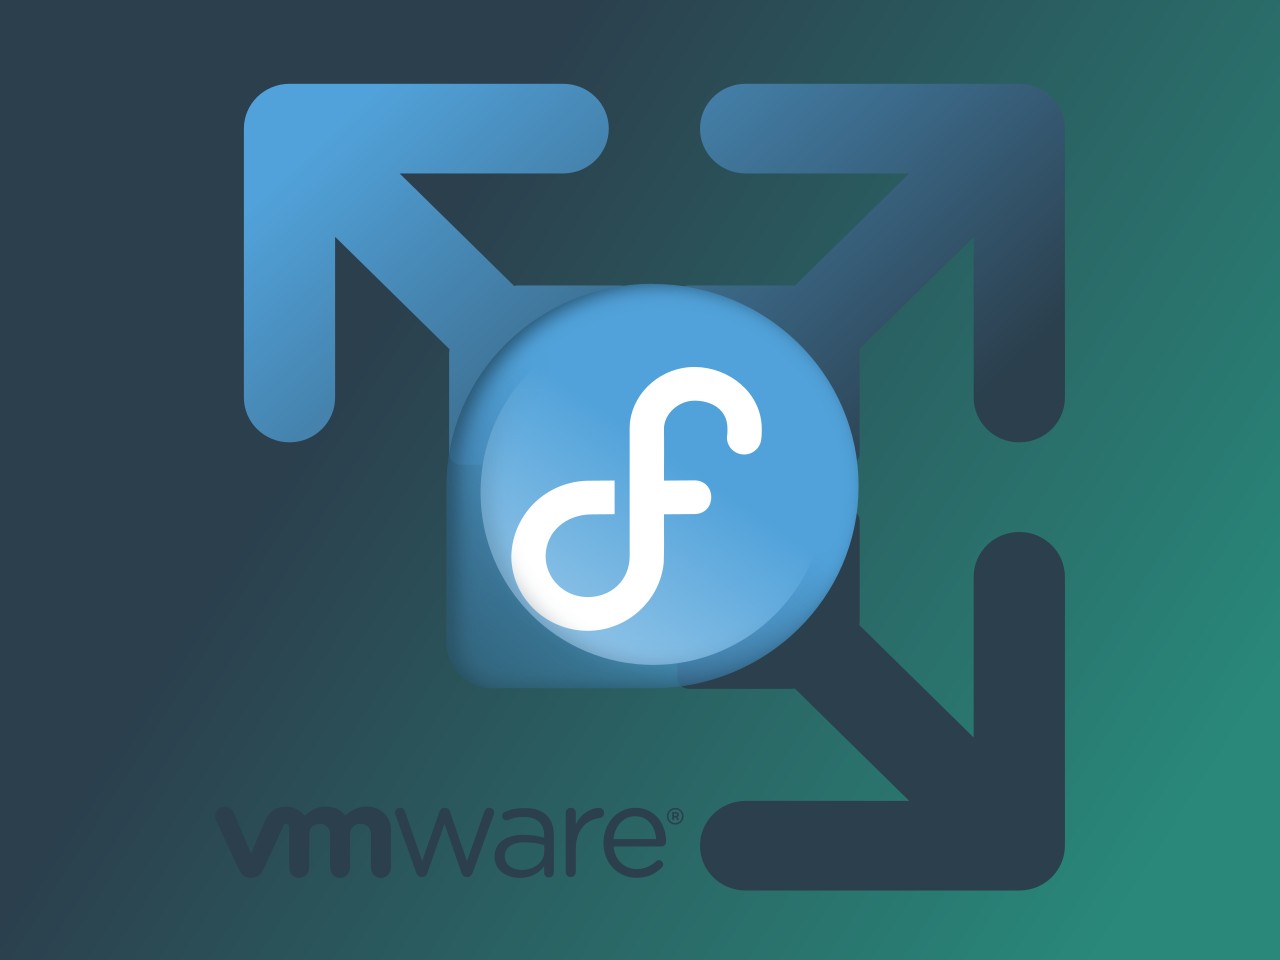 download vmware workstation fedora